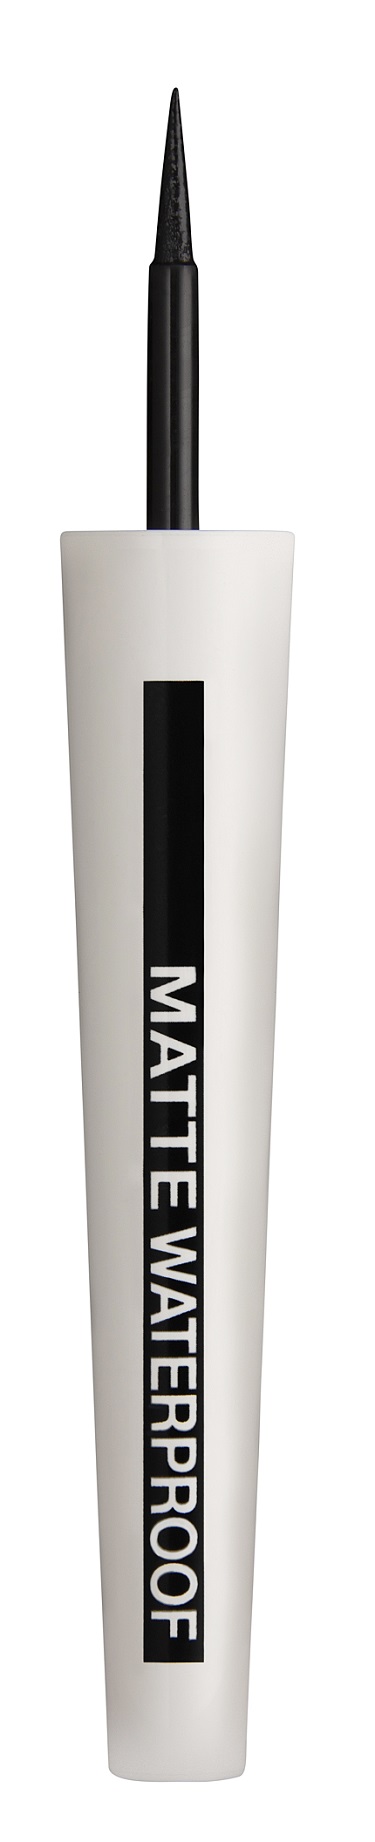 Maybelline York ❤️ parfumdreams online von Master Waterproof New Ink | Eyeliner Matte Eyeliner kaufen